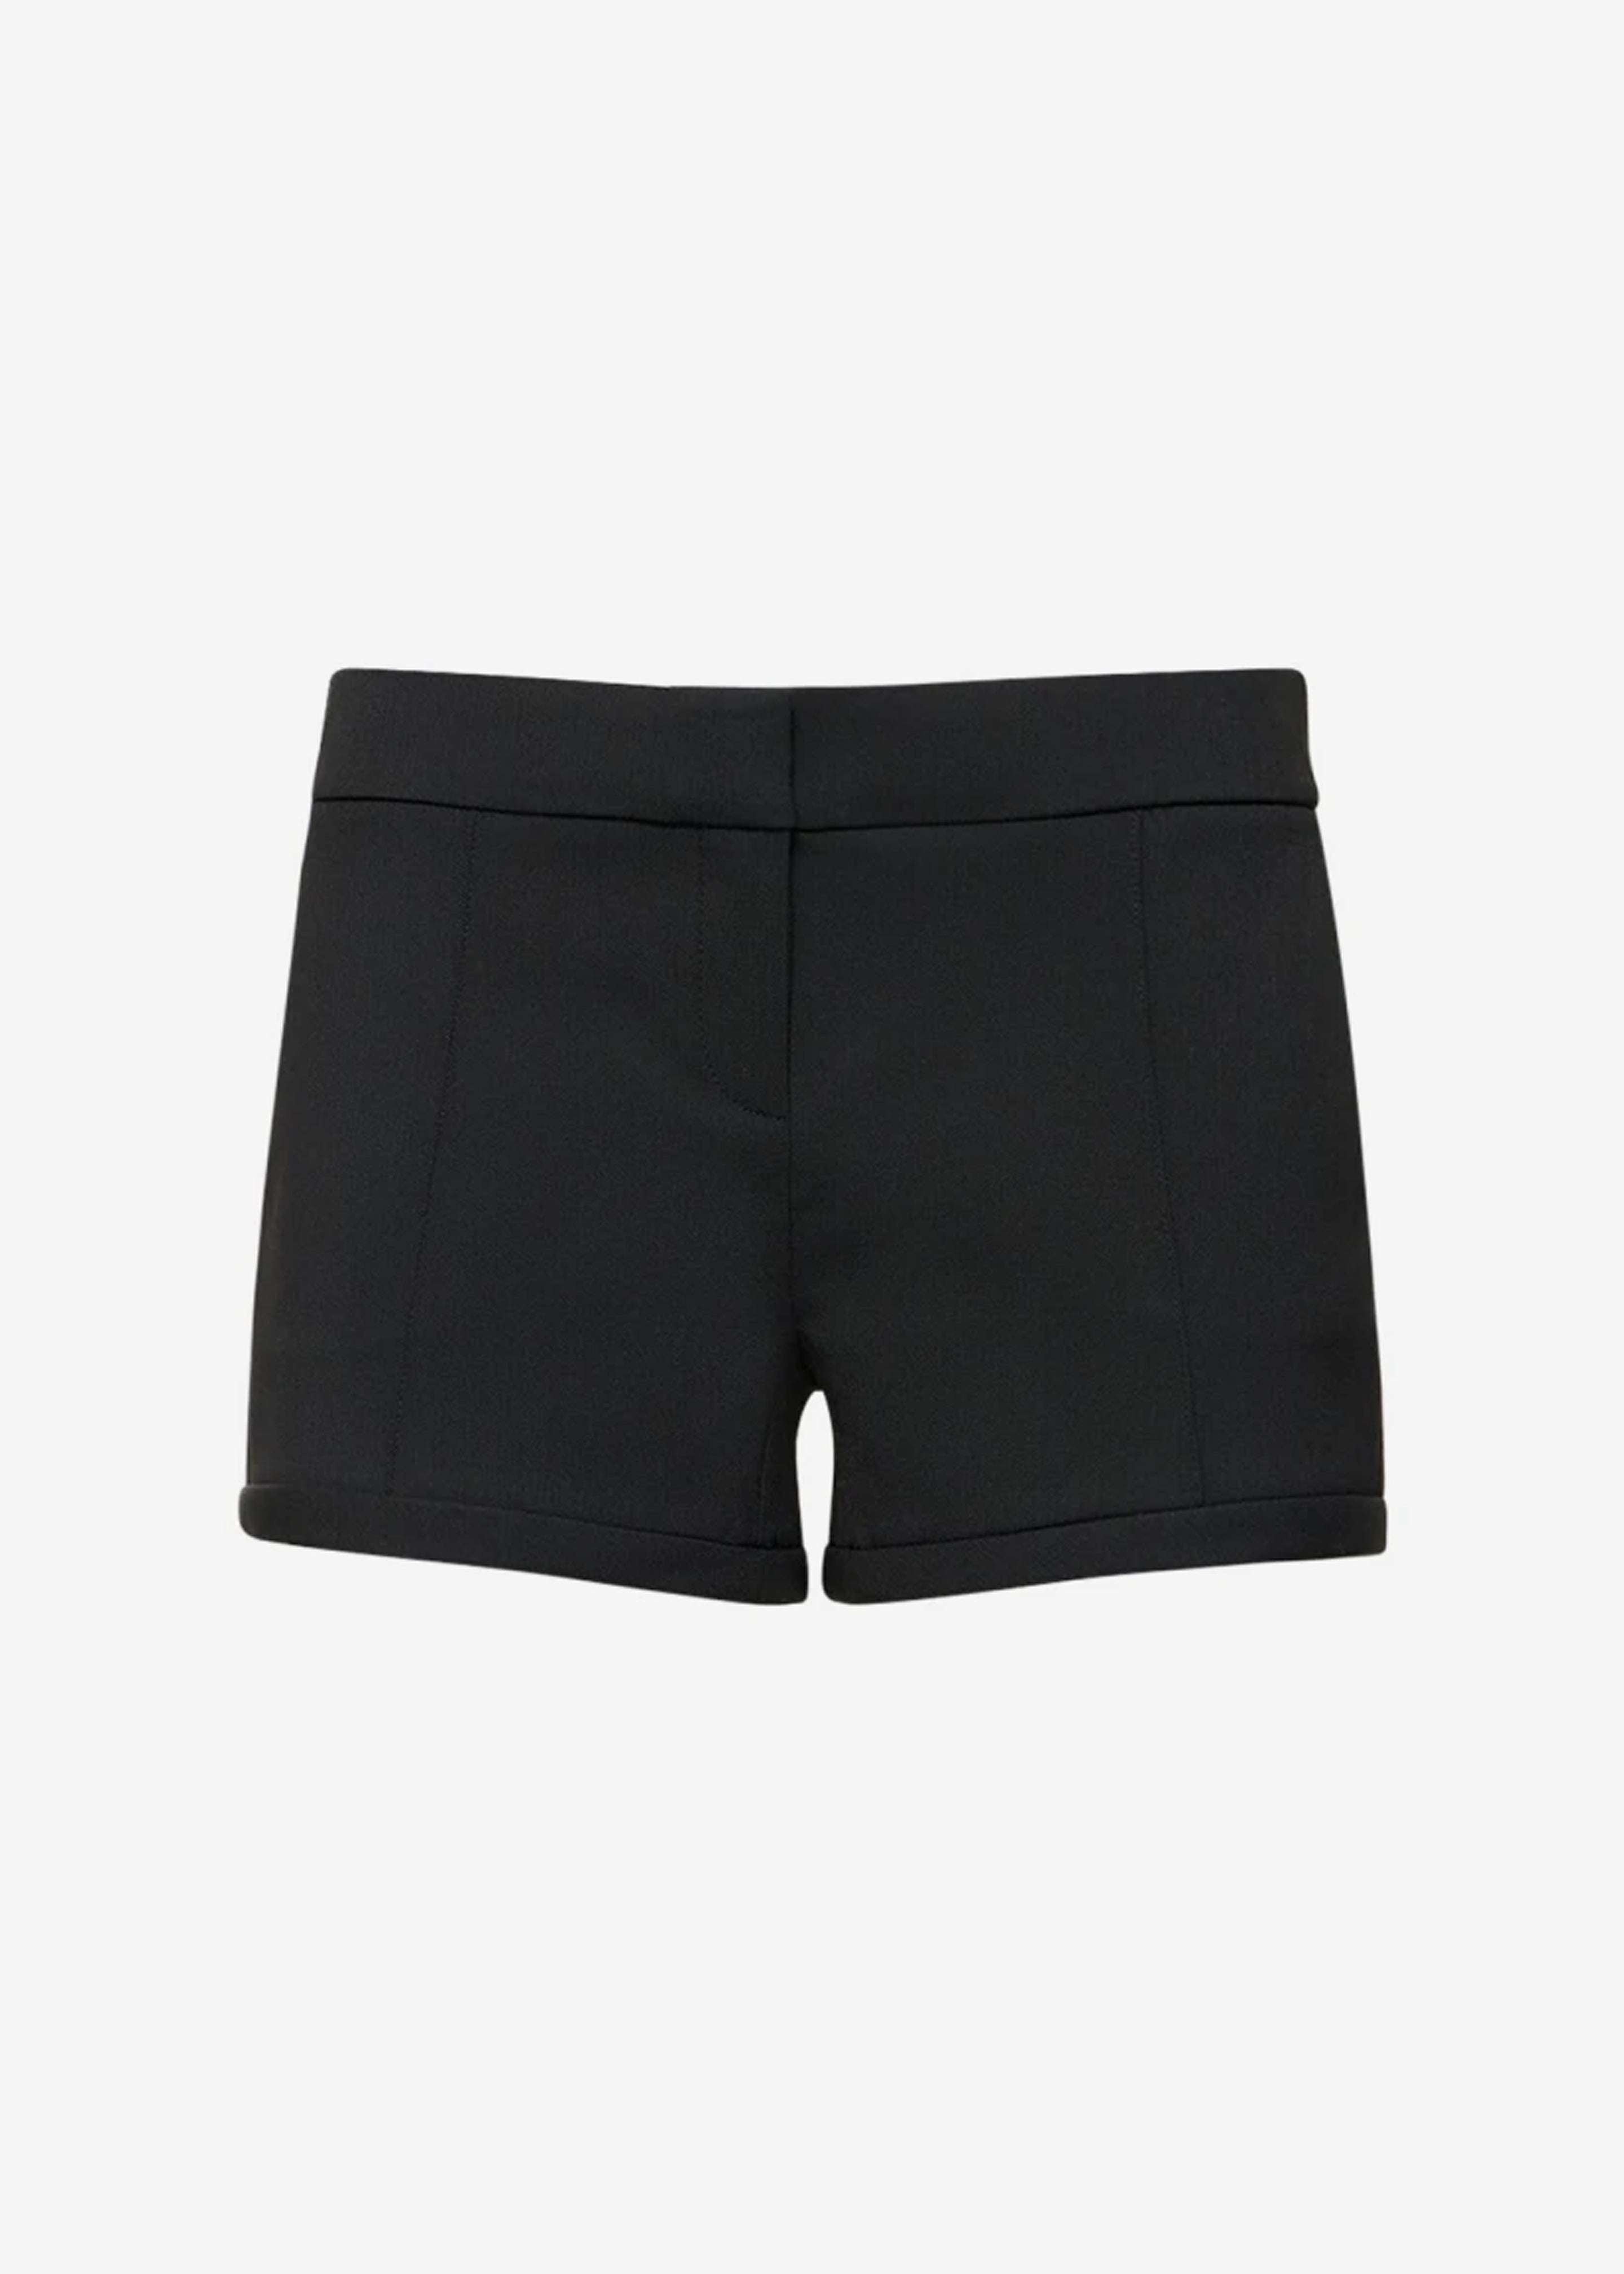 Coperni Tailored Shorts - Black - 9